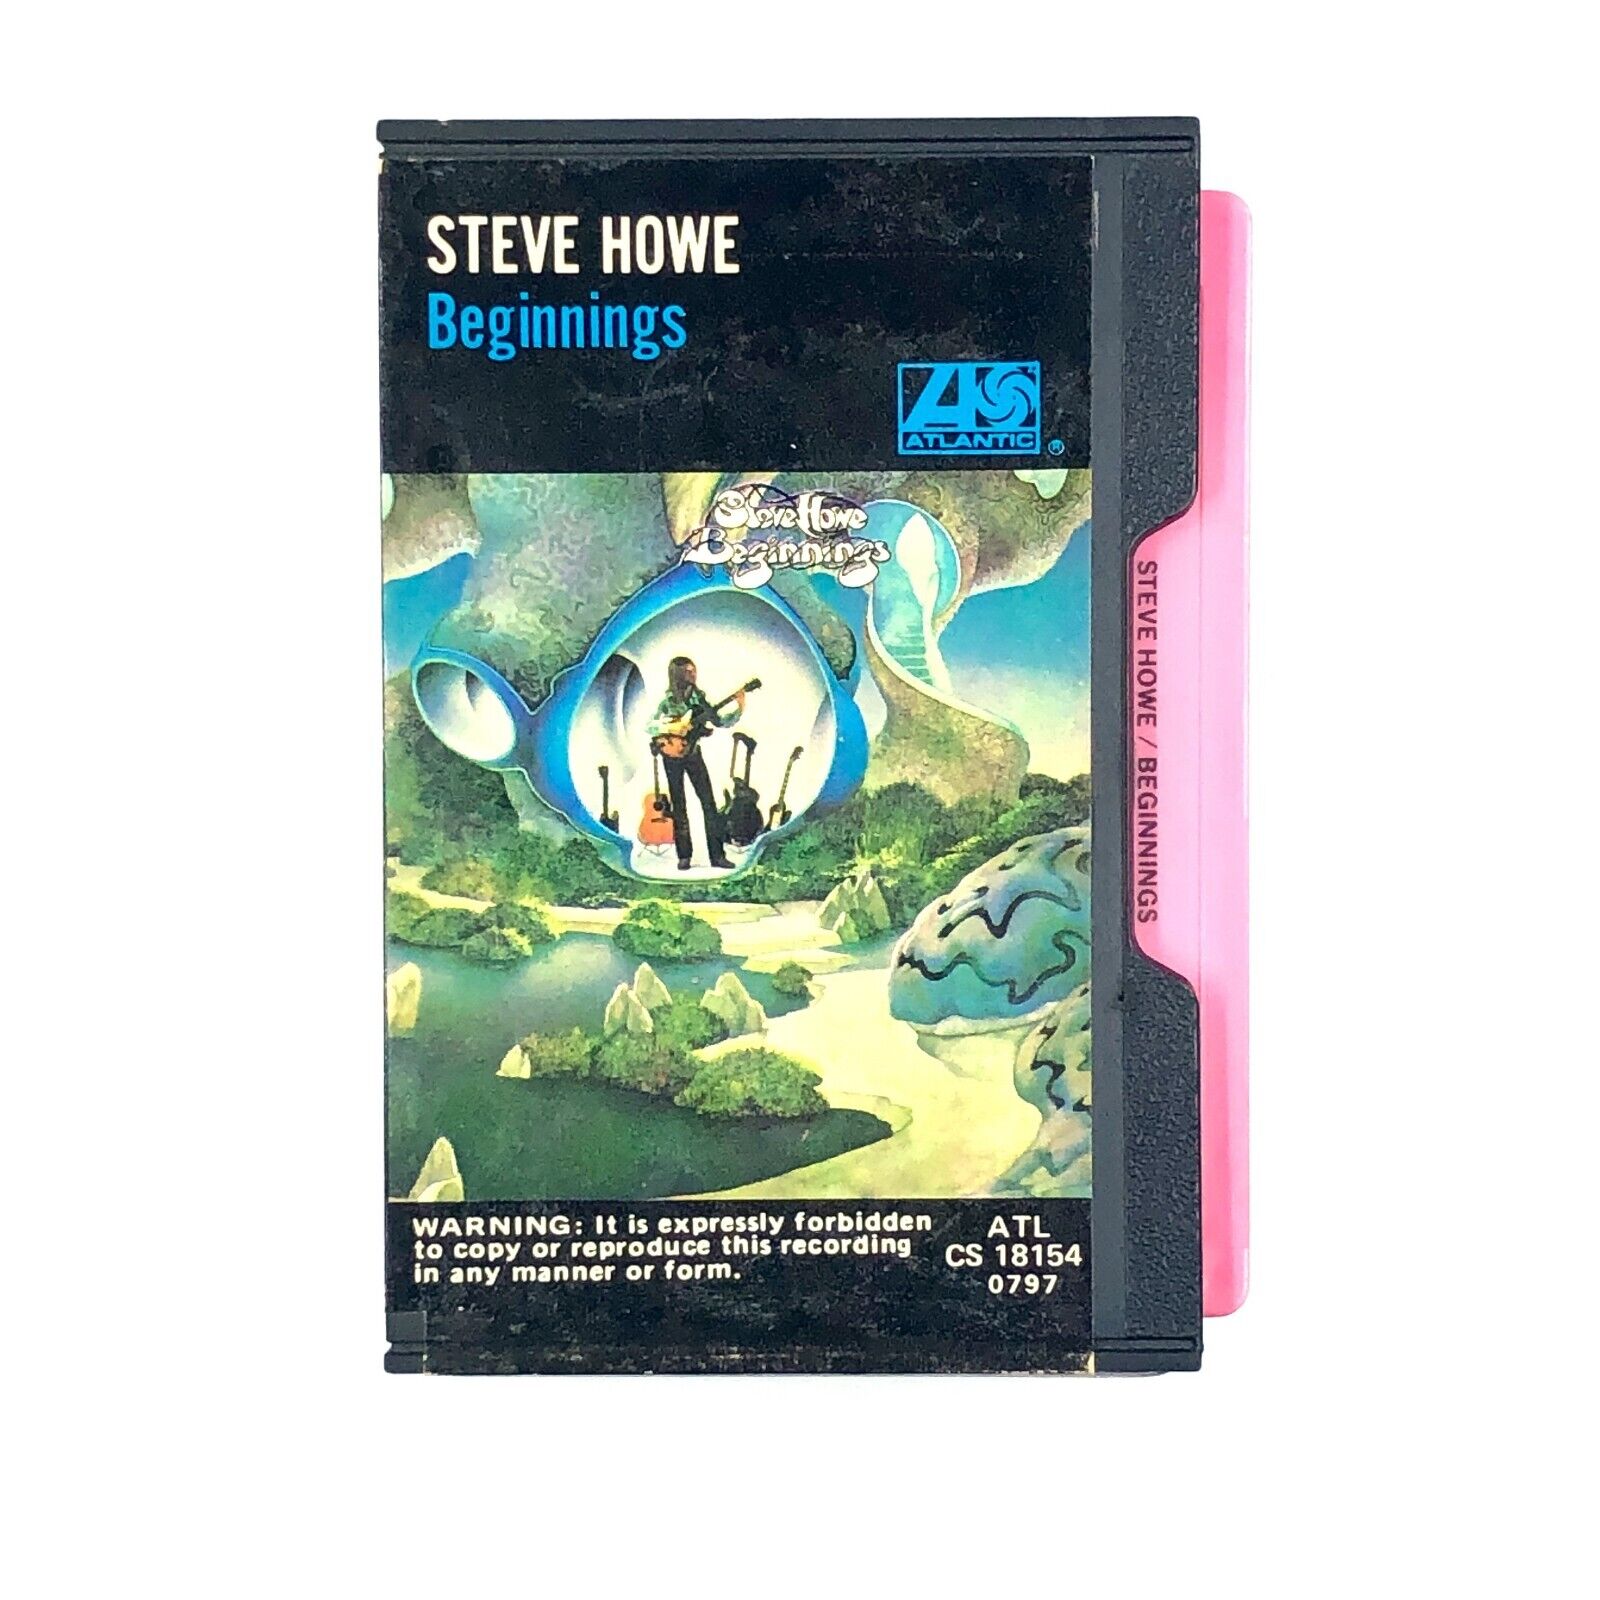 STEVE HOWE BEGINNINGS Cassette Tape 1975 SLIPCASE RELEASE Rock Prog Rare